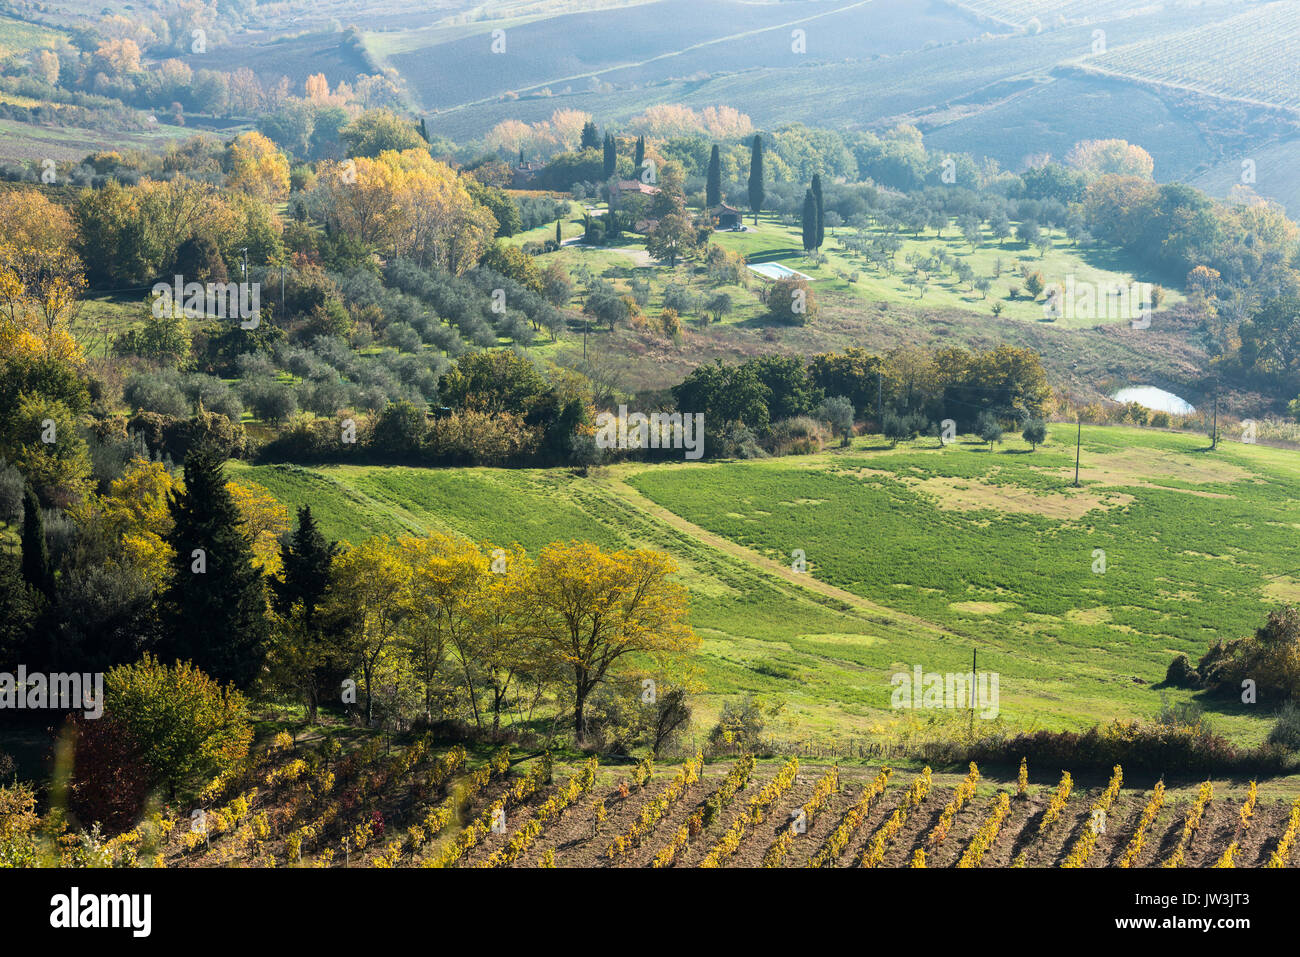 Un paysage typique de la Toscane avec grande vert, jaune et rouge, les lignes de champs de vigne d'oliviers, des petits immeubles, les allées de cyprès et d'autumn Banque D'Images